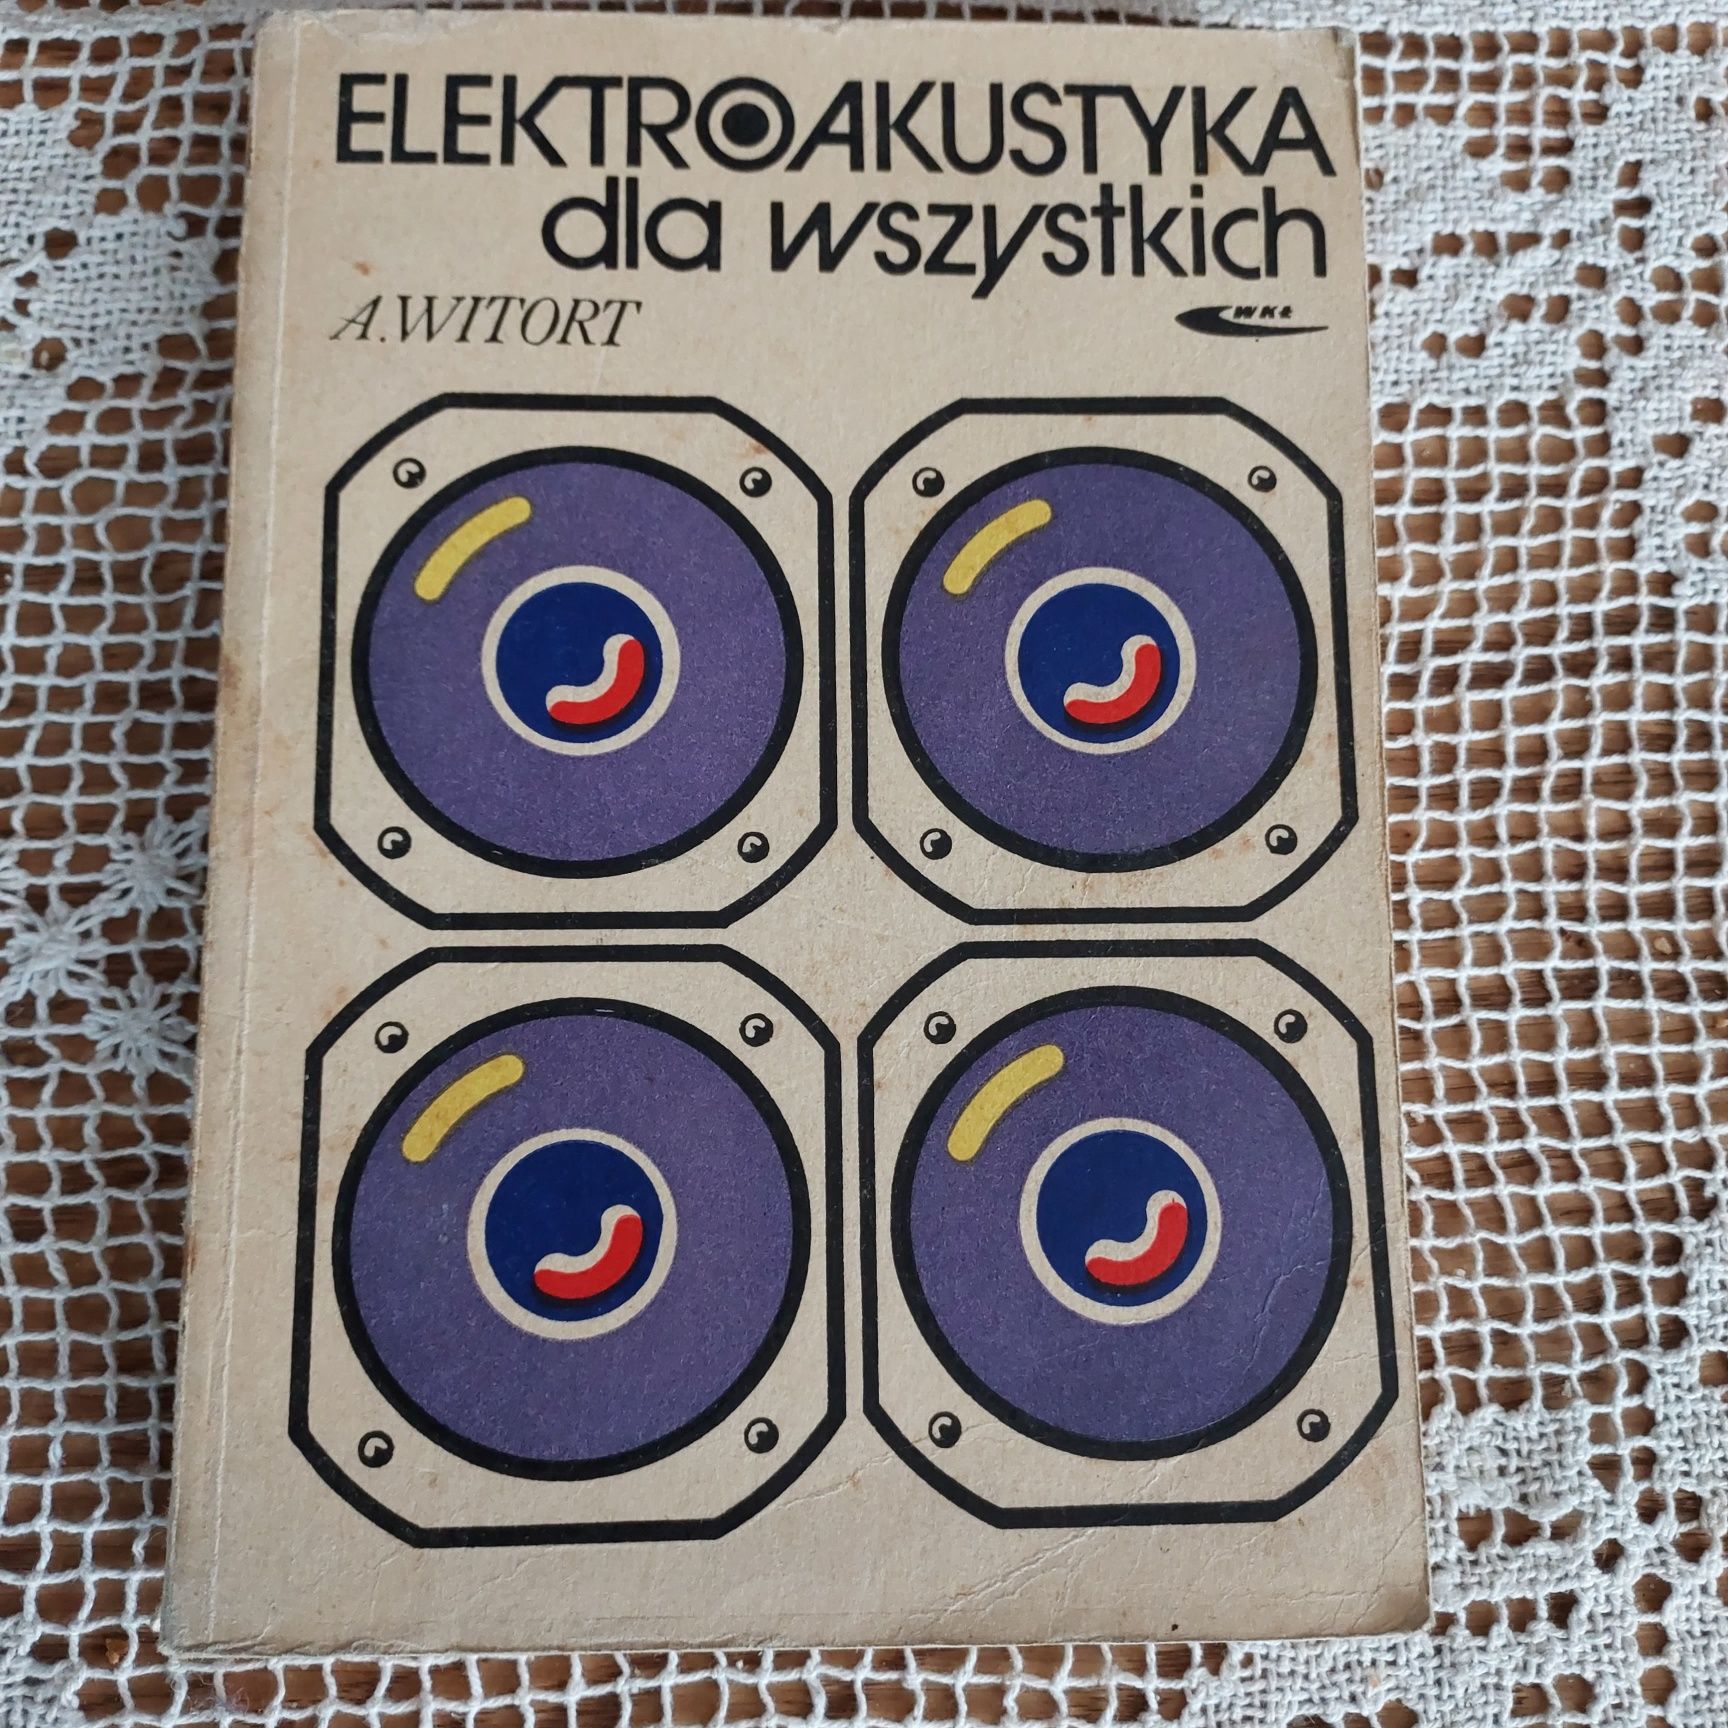 Książka Elektroakustyka dla wszystkich A.Witort